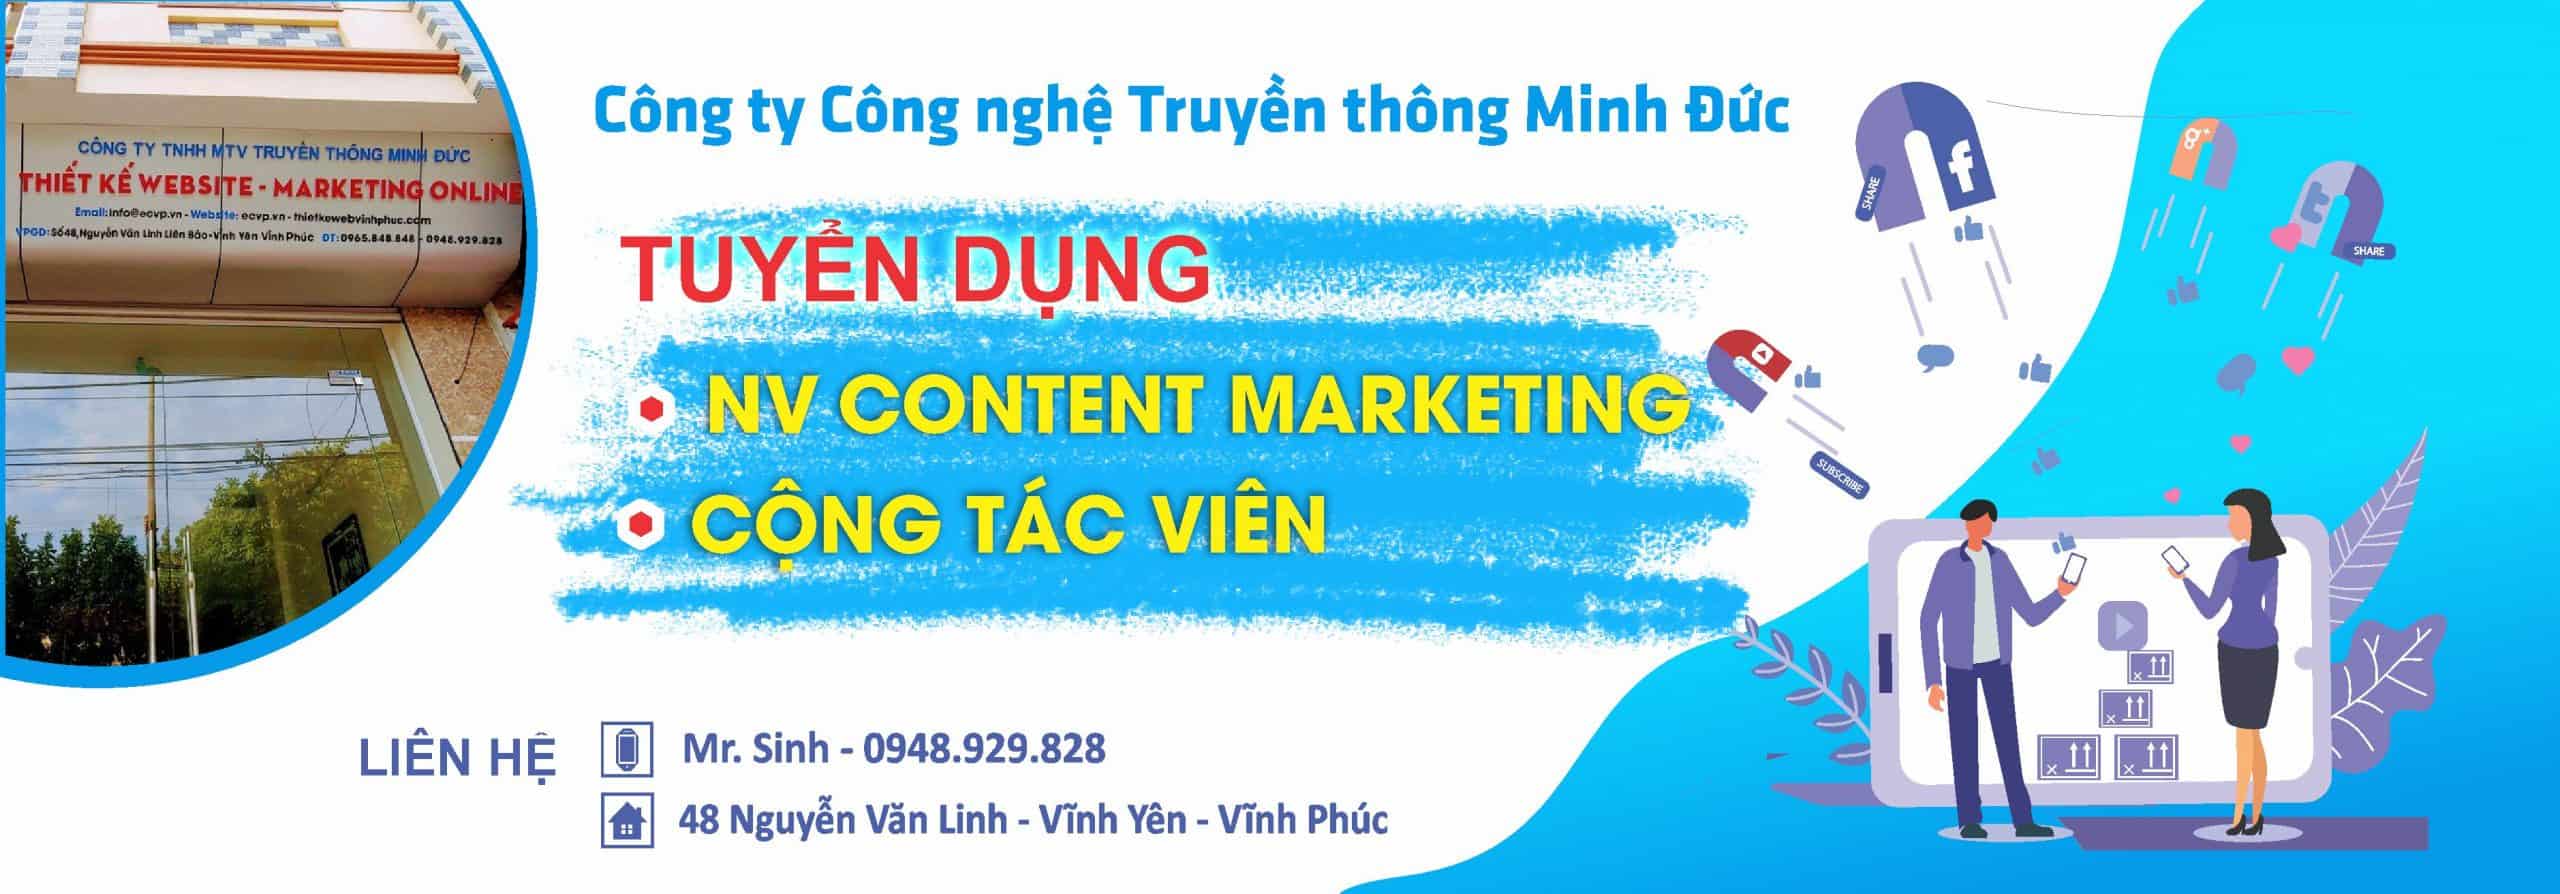 Banner Tuyen Dung Minh Duc